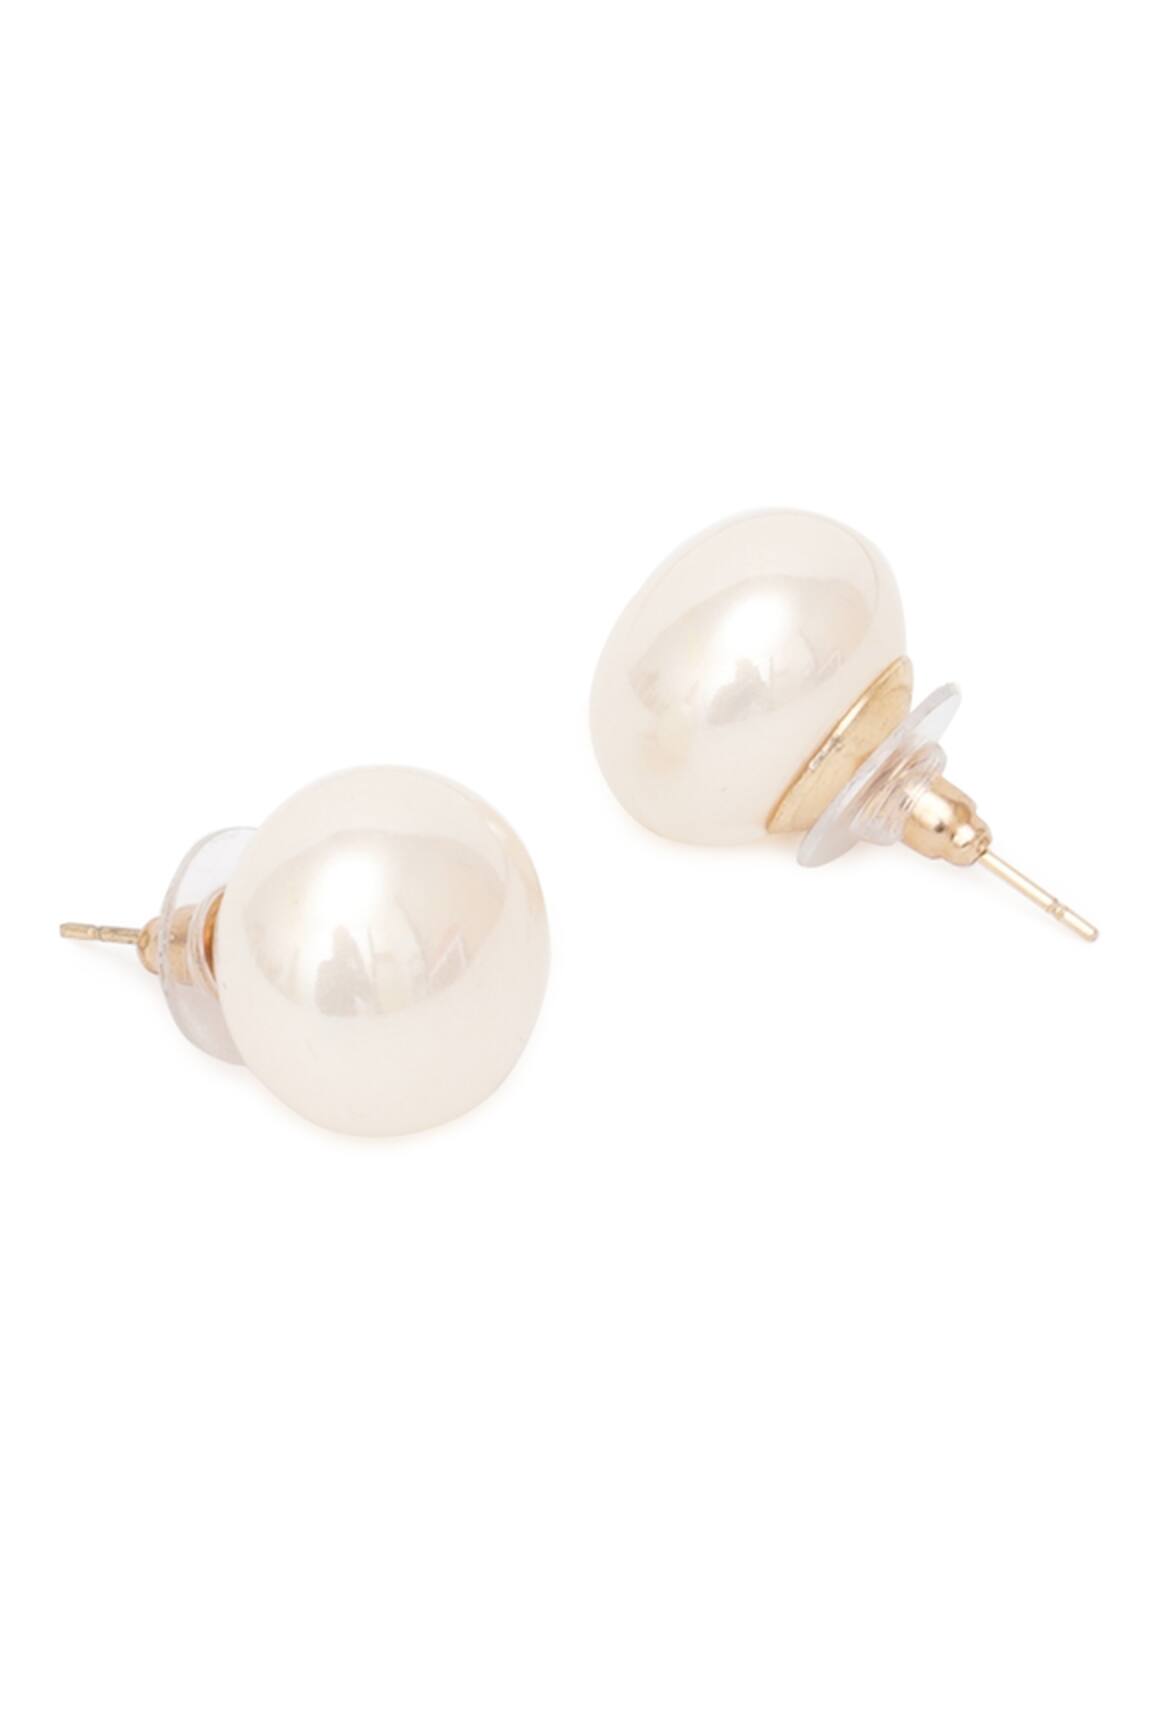 Buy Cream Earrings for Women by Sohi Online  Ajiocom